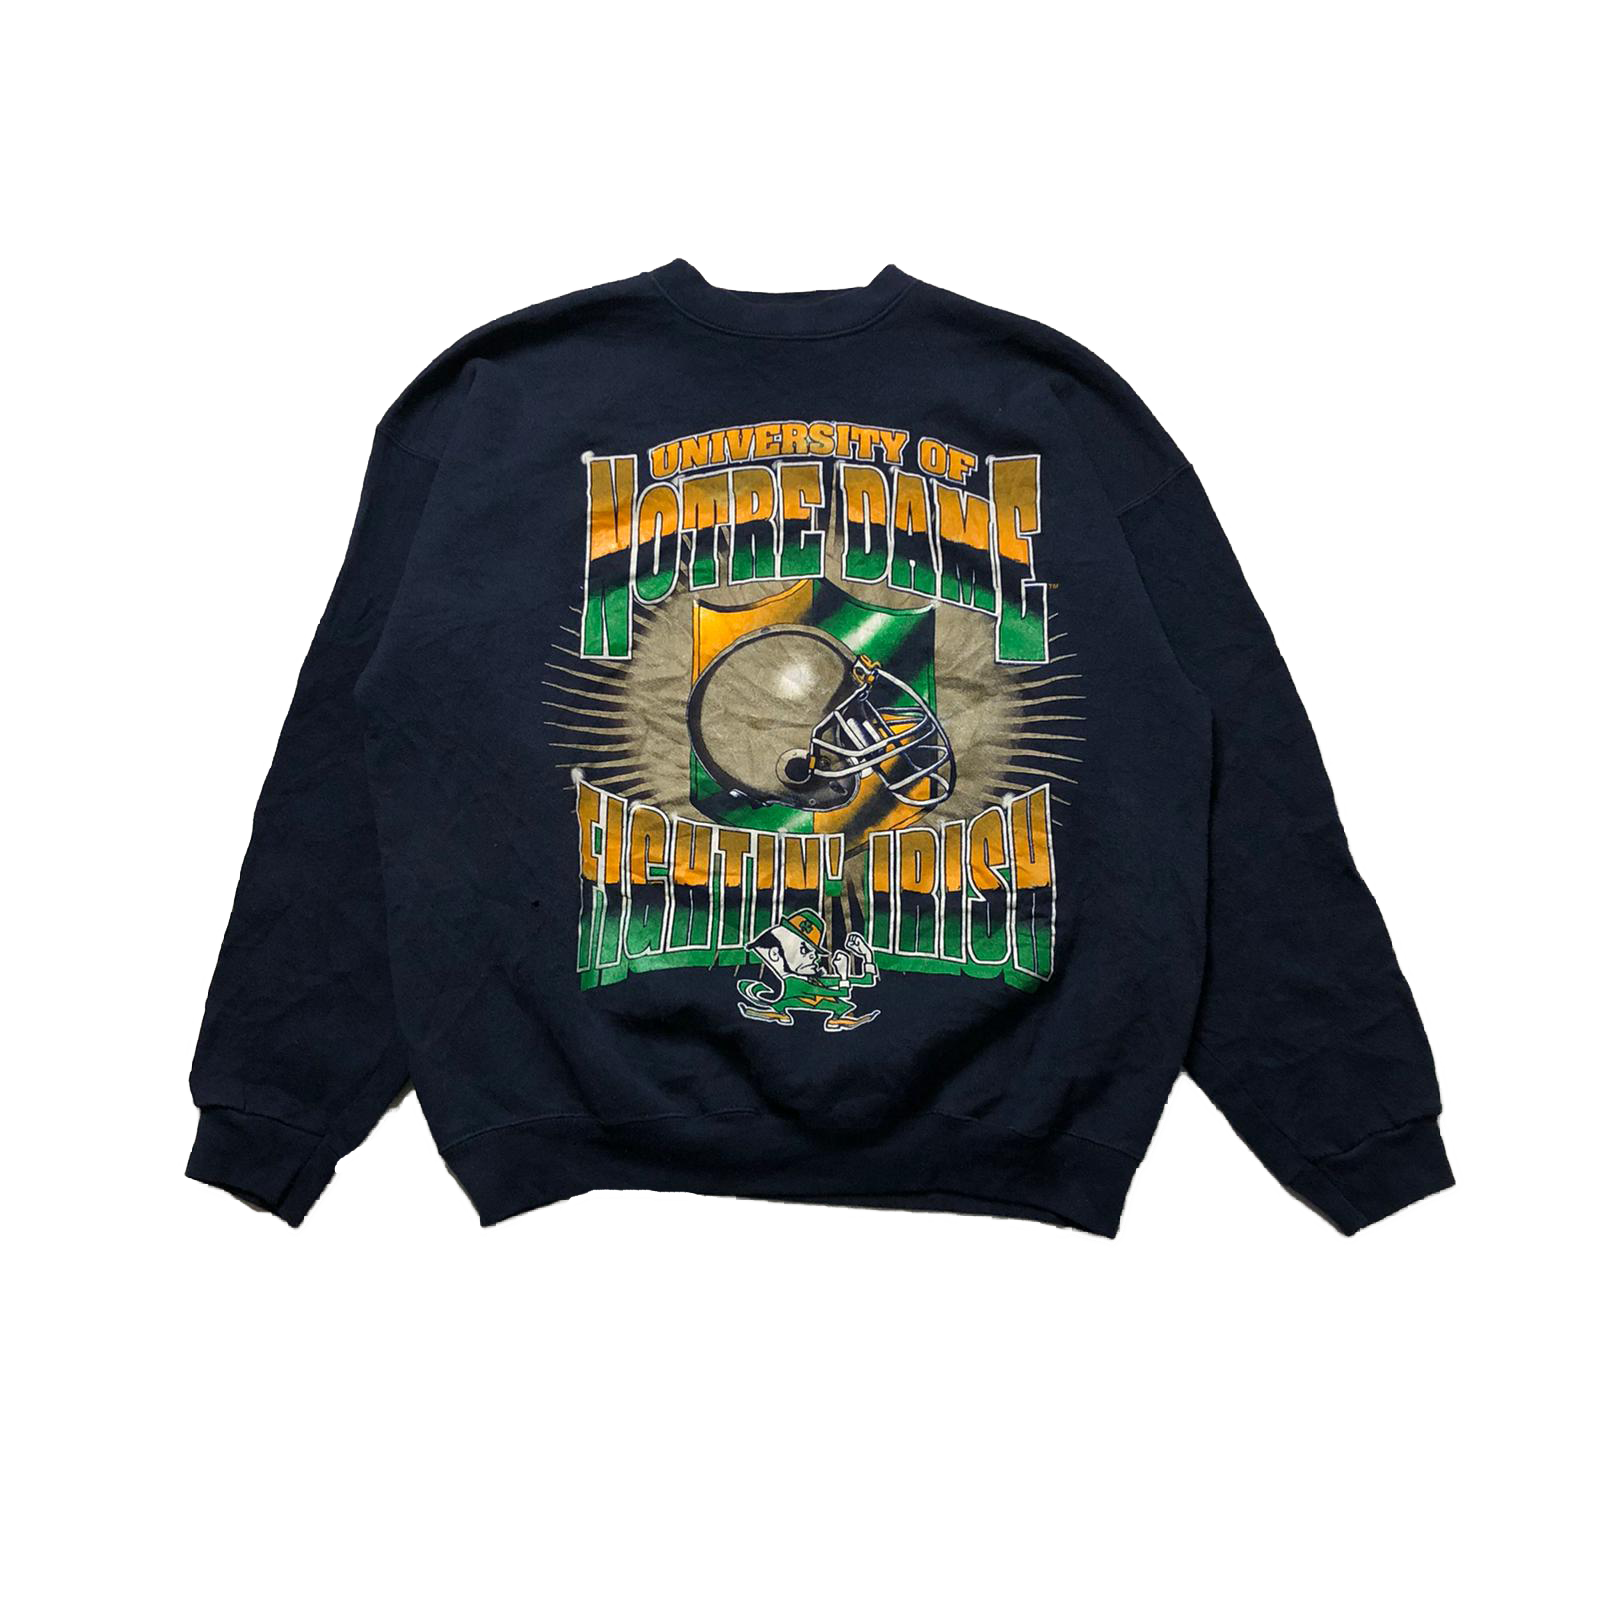 90's Notre Dame sweatshirt